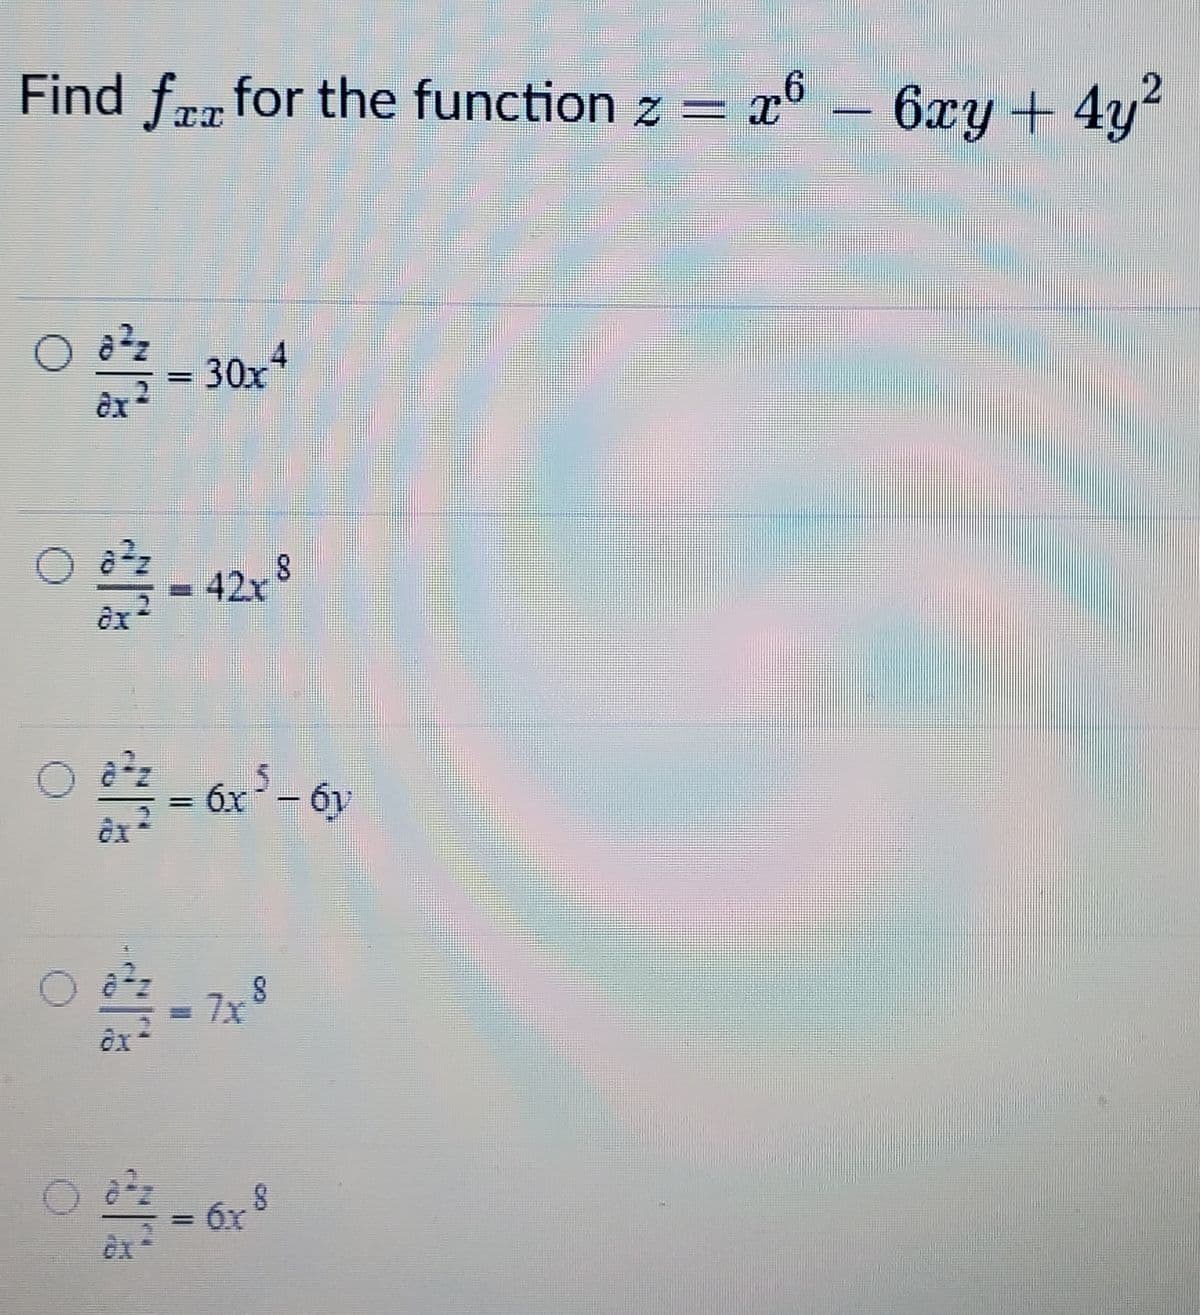 Find fr for the function z
= x6 –
6xy+4y
0些-
4
30x
èx
42x 8
0些-a'-e
6x
6y
7x
6x
